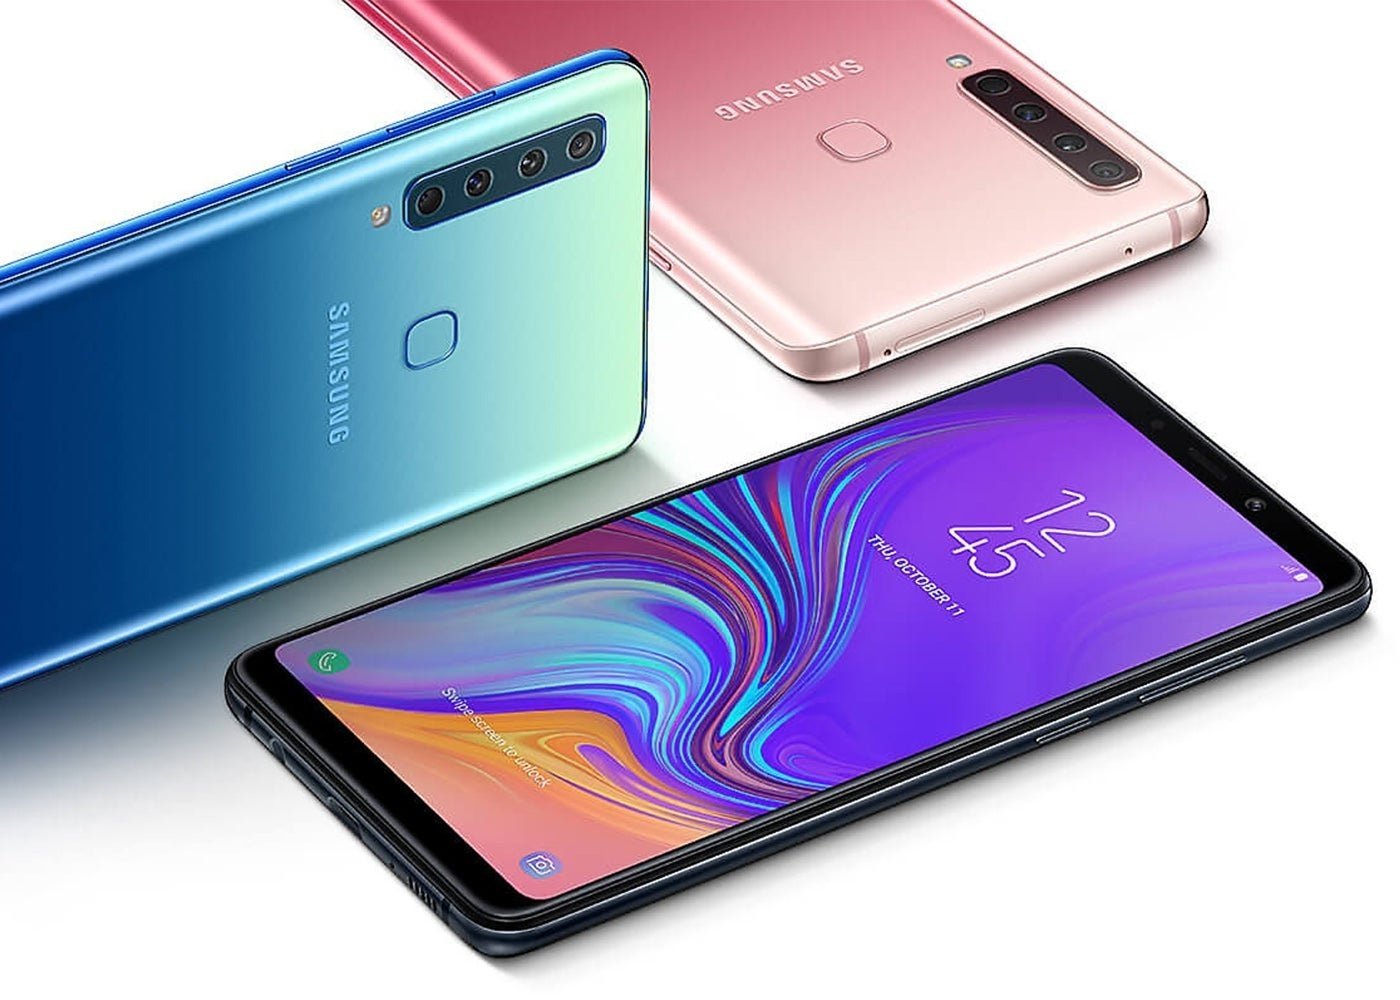 Samsung Galaxy A9 2018 filtrado al completo: imágenes, características y precio